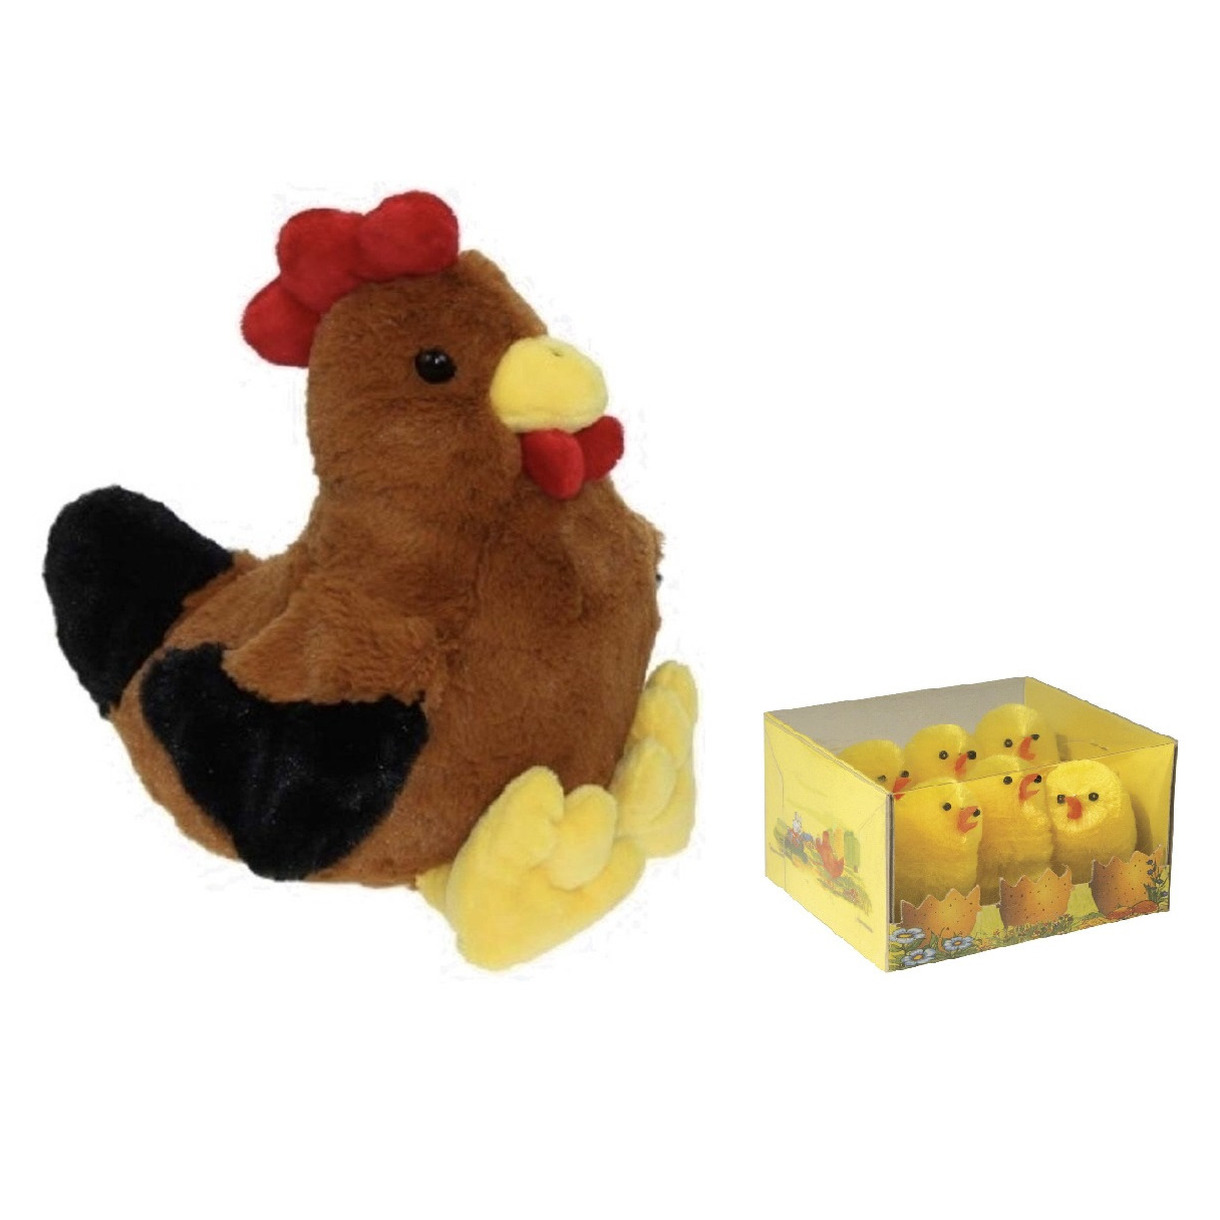 Pluche bruine kippen-hanen knuffel van 25 cm met 6x stuks mini kuikentjes 5 cm